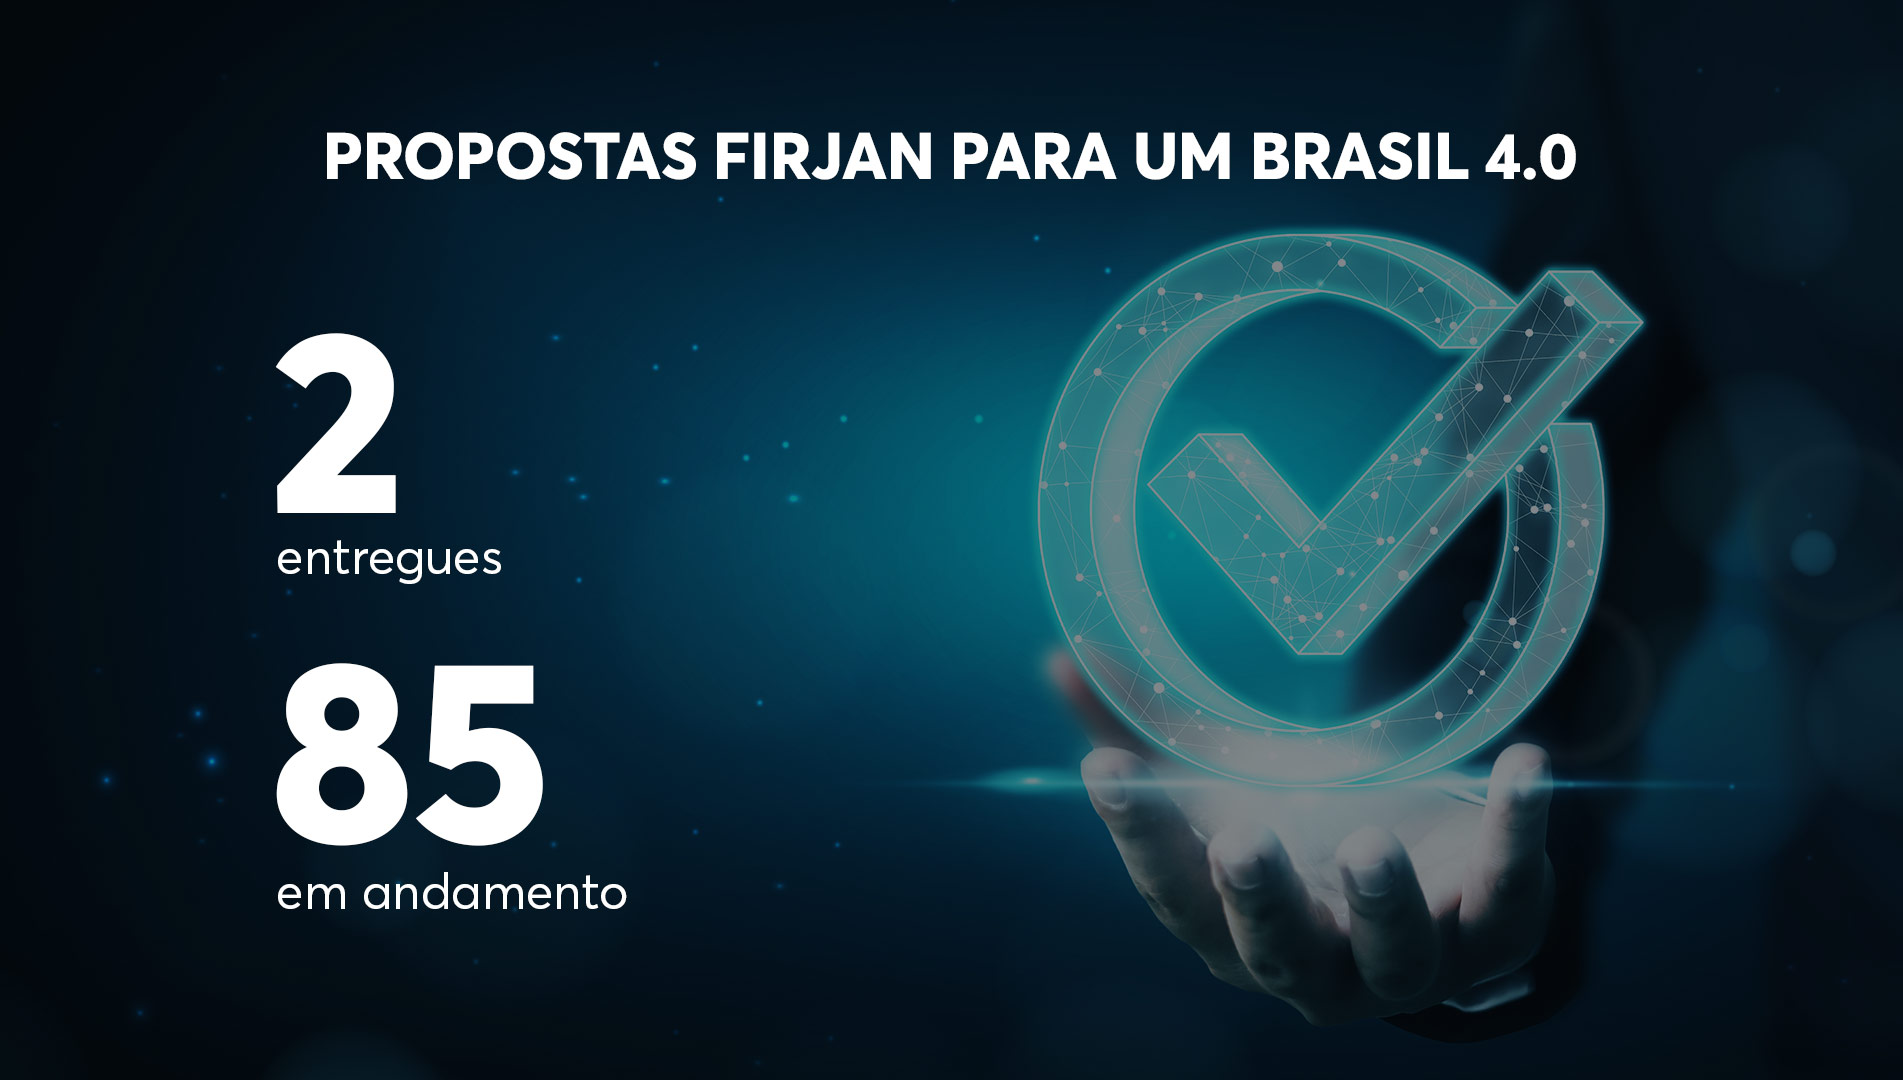 Maior parte das Propostas Firjan para um Brasil 4.0 está em andamento